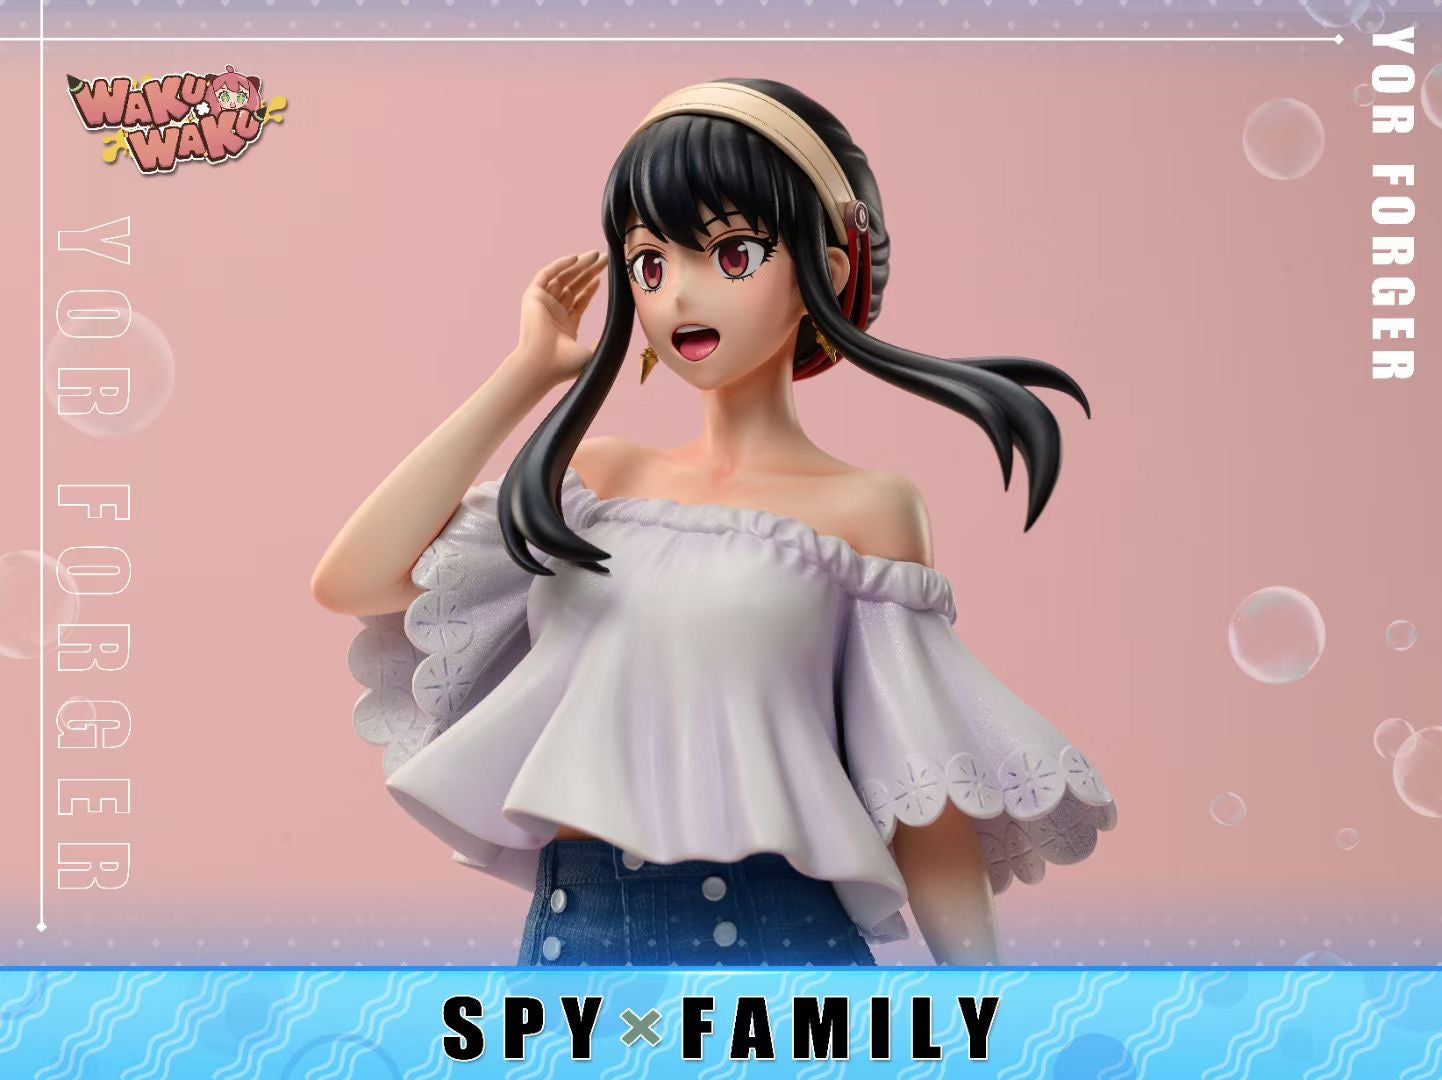 WakuWaku Studio - Spy x Family Yor Forger |《Spy x Family》约尔·福杰